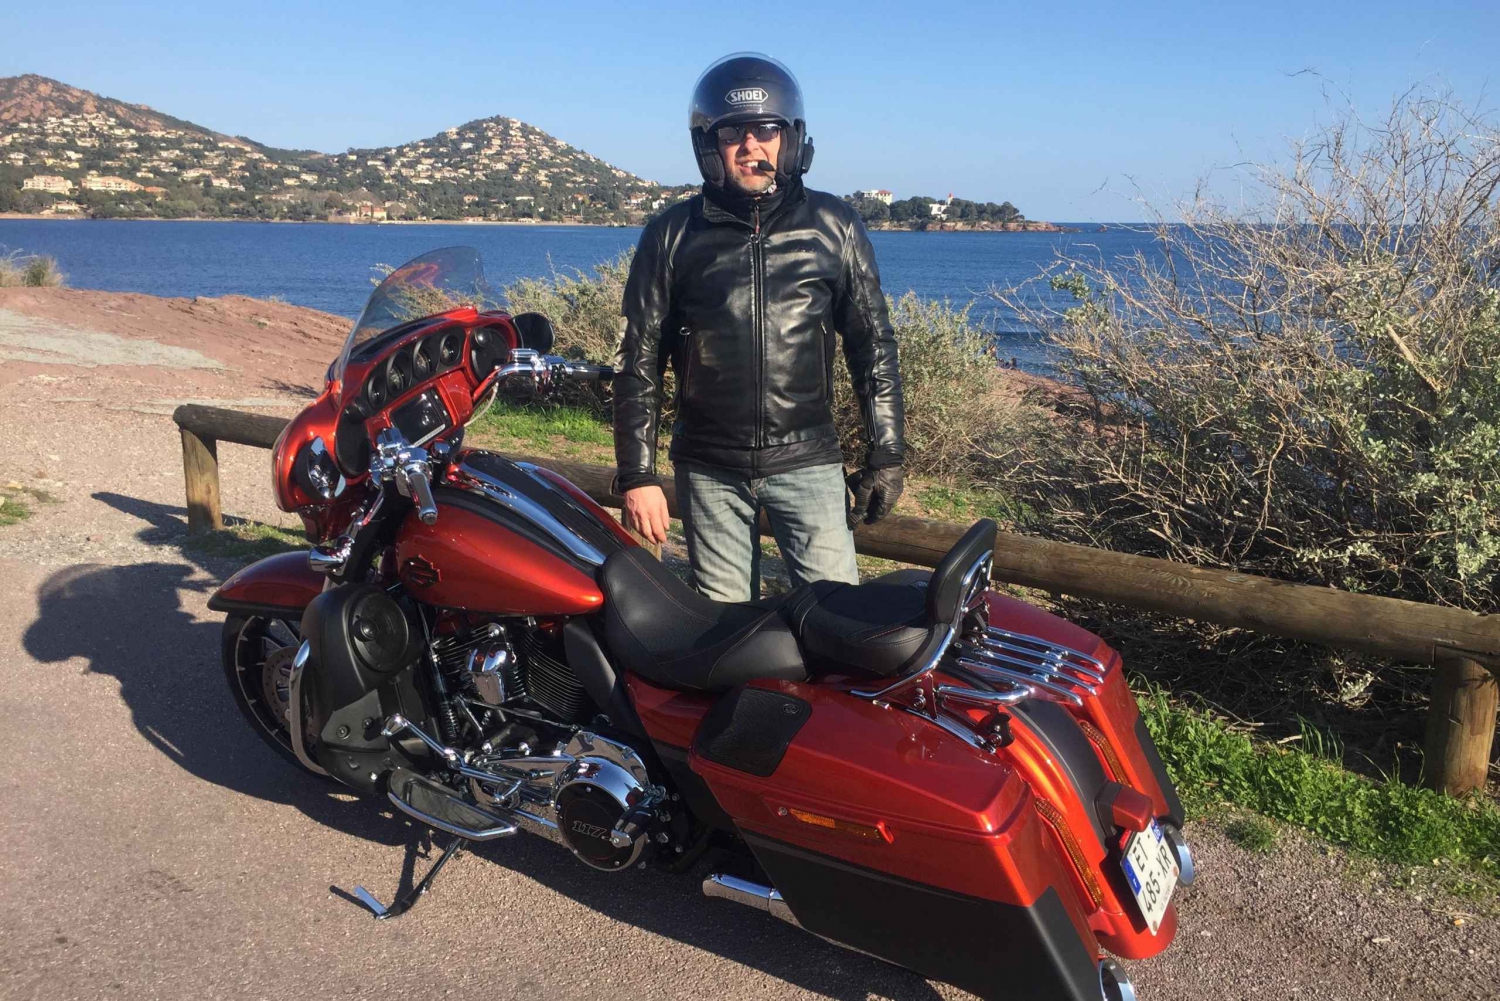 Passeio guiado de passageiros da Harley Davidson pelas estradas de Cannes